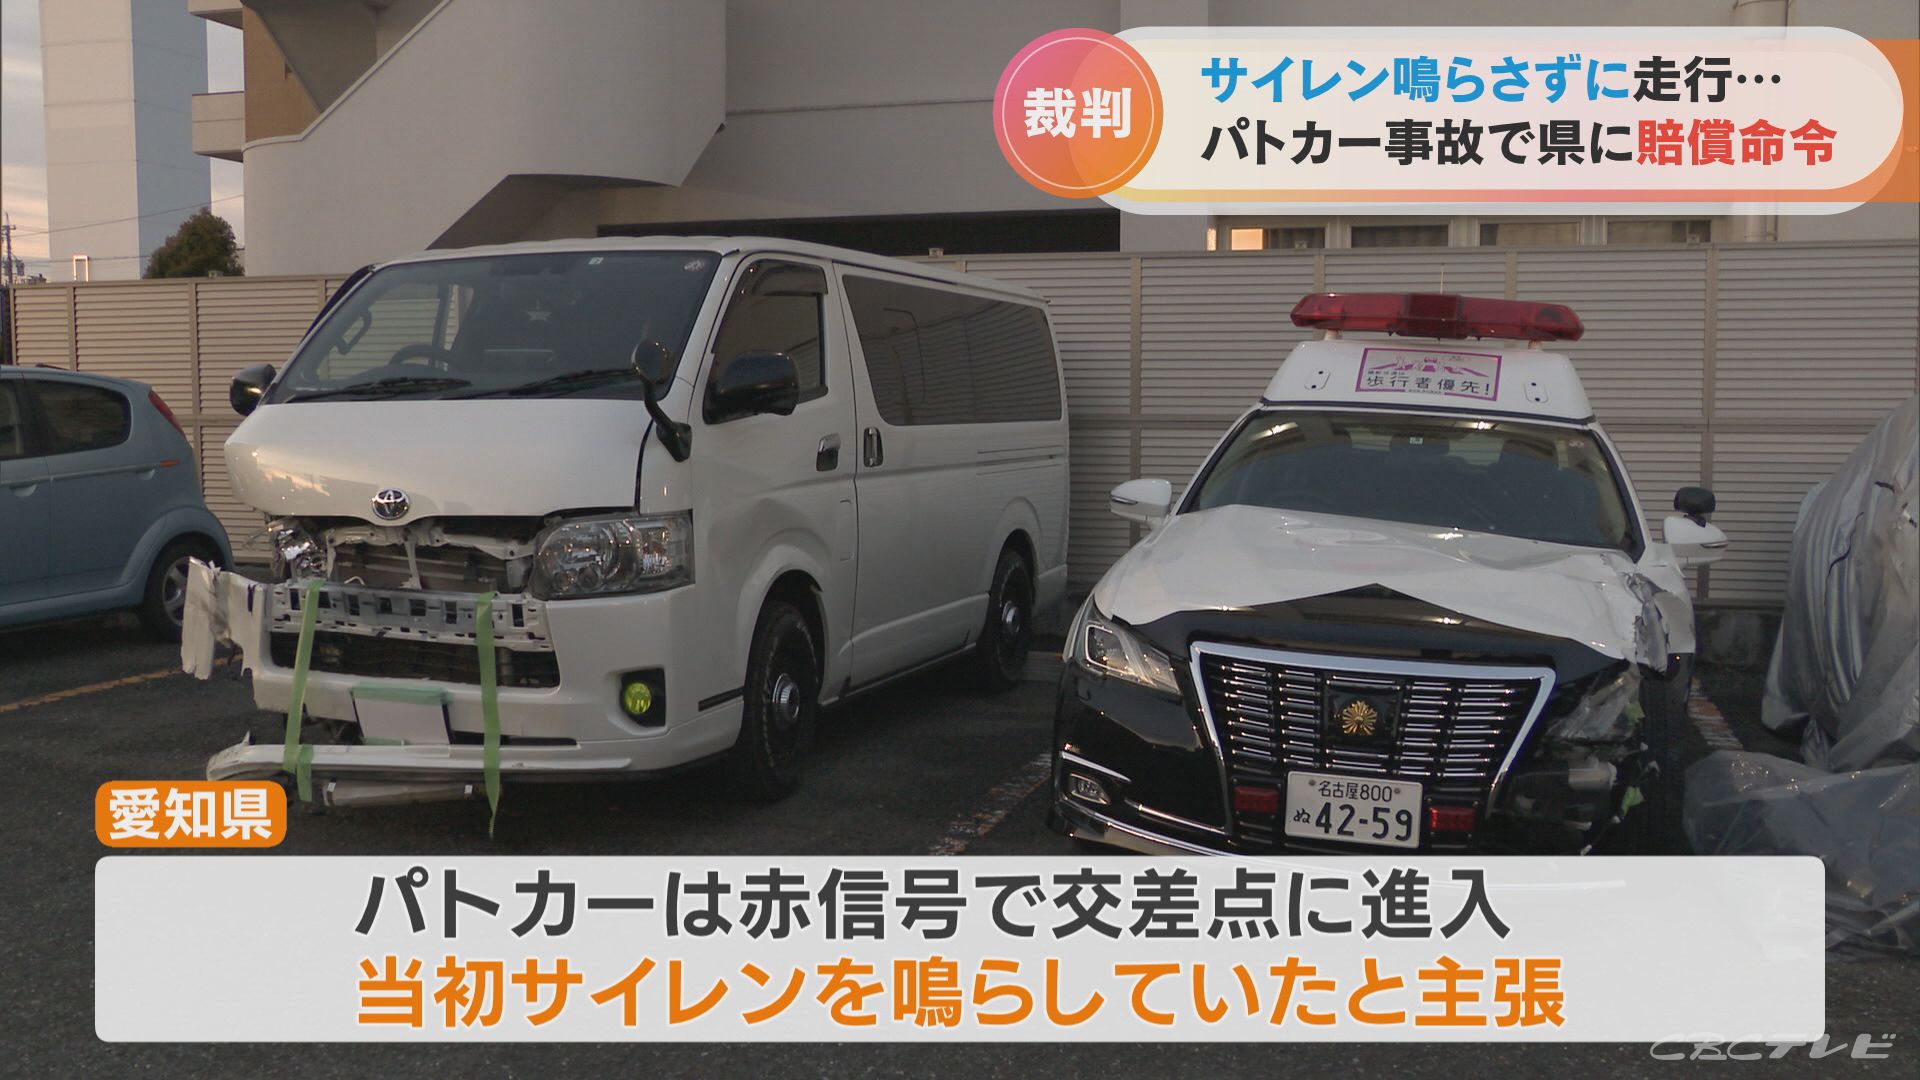 愛知県警 裁判途中で「サイレンは鳴っていなかった」と認める…パトカーとの事故で後遺症負ったという男性に約385万円の支払い命令